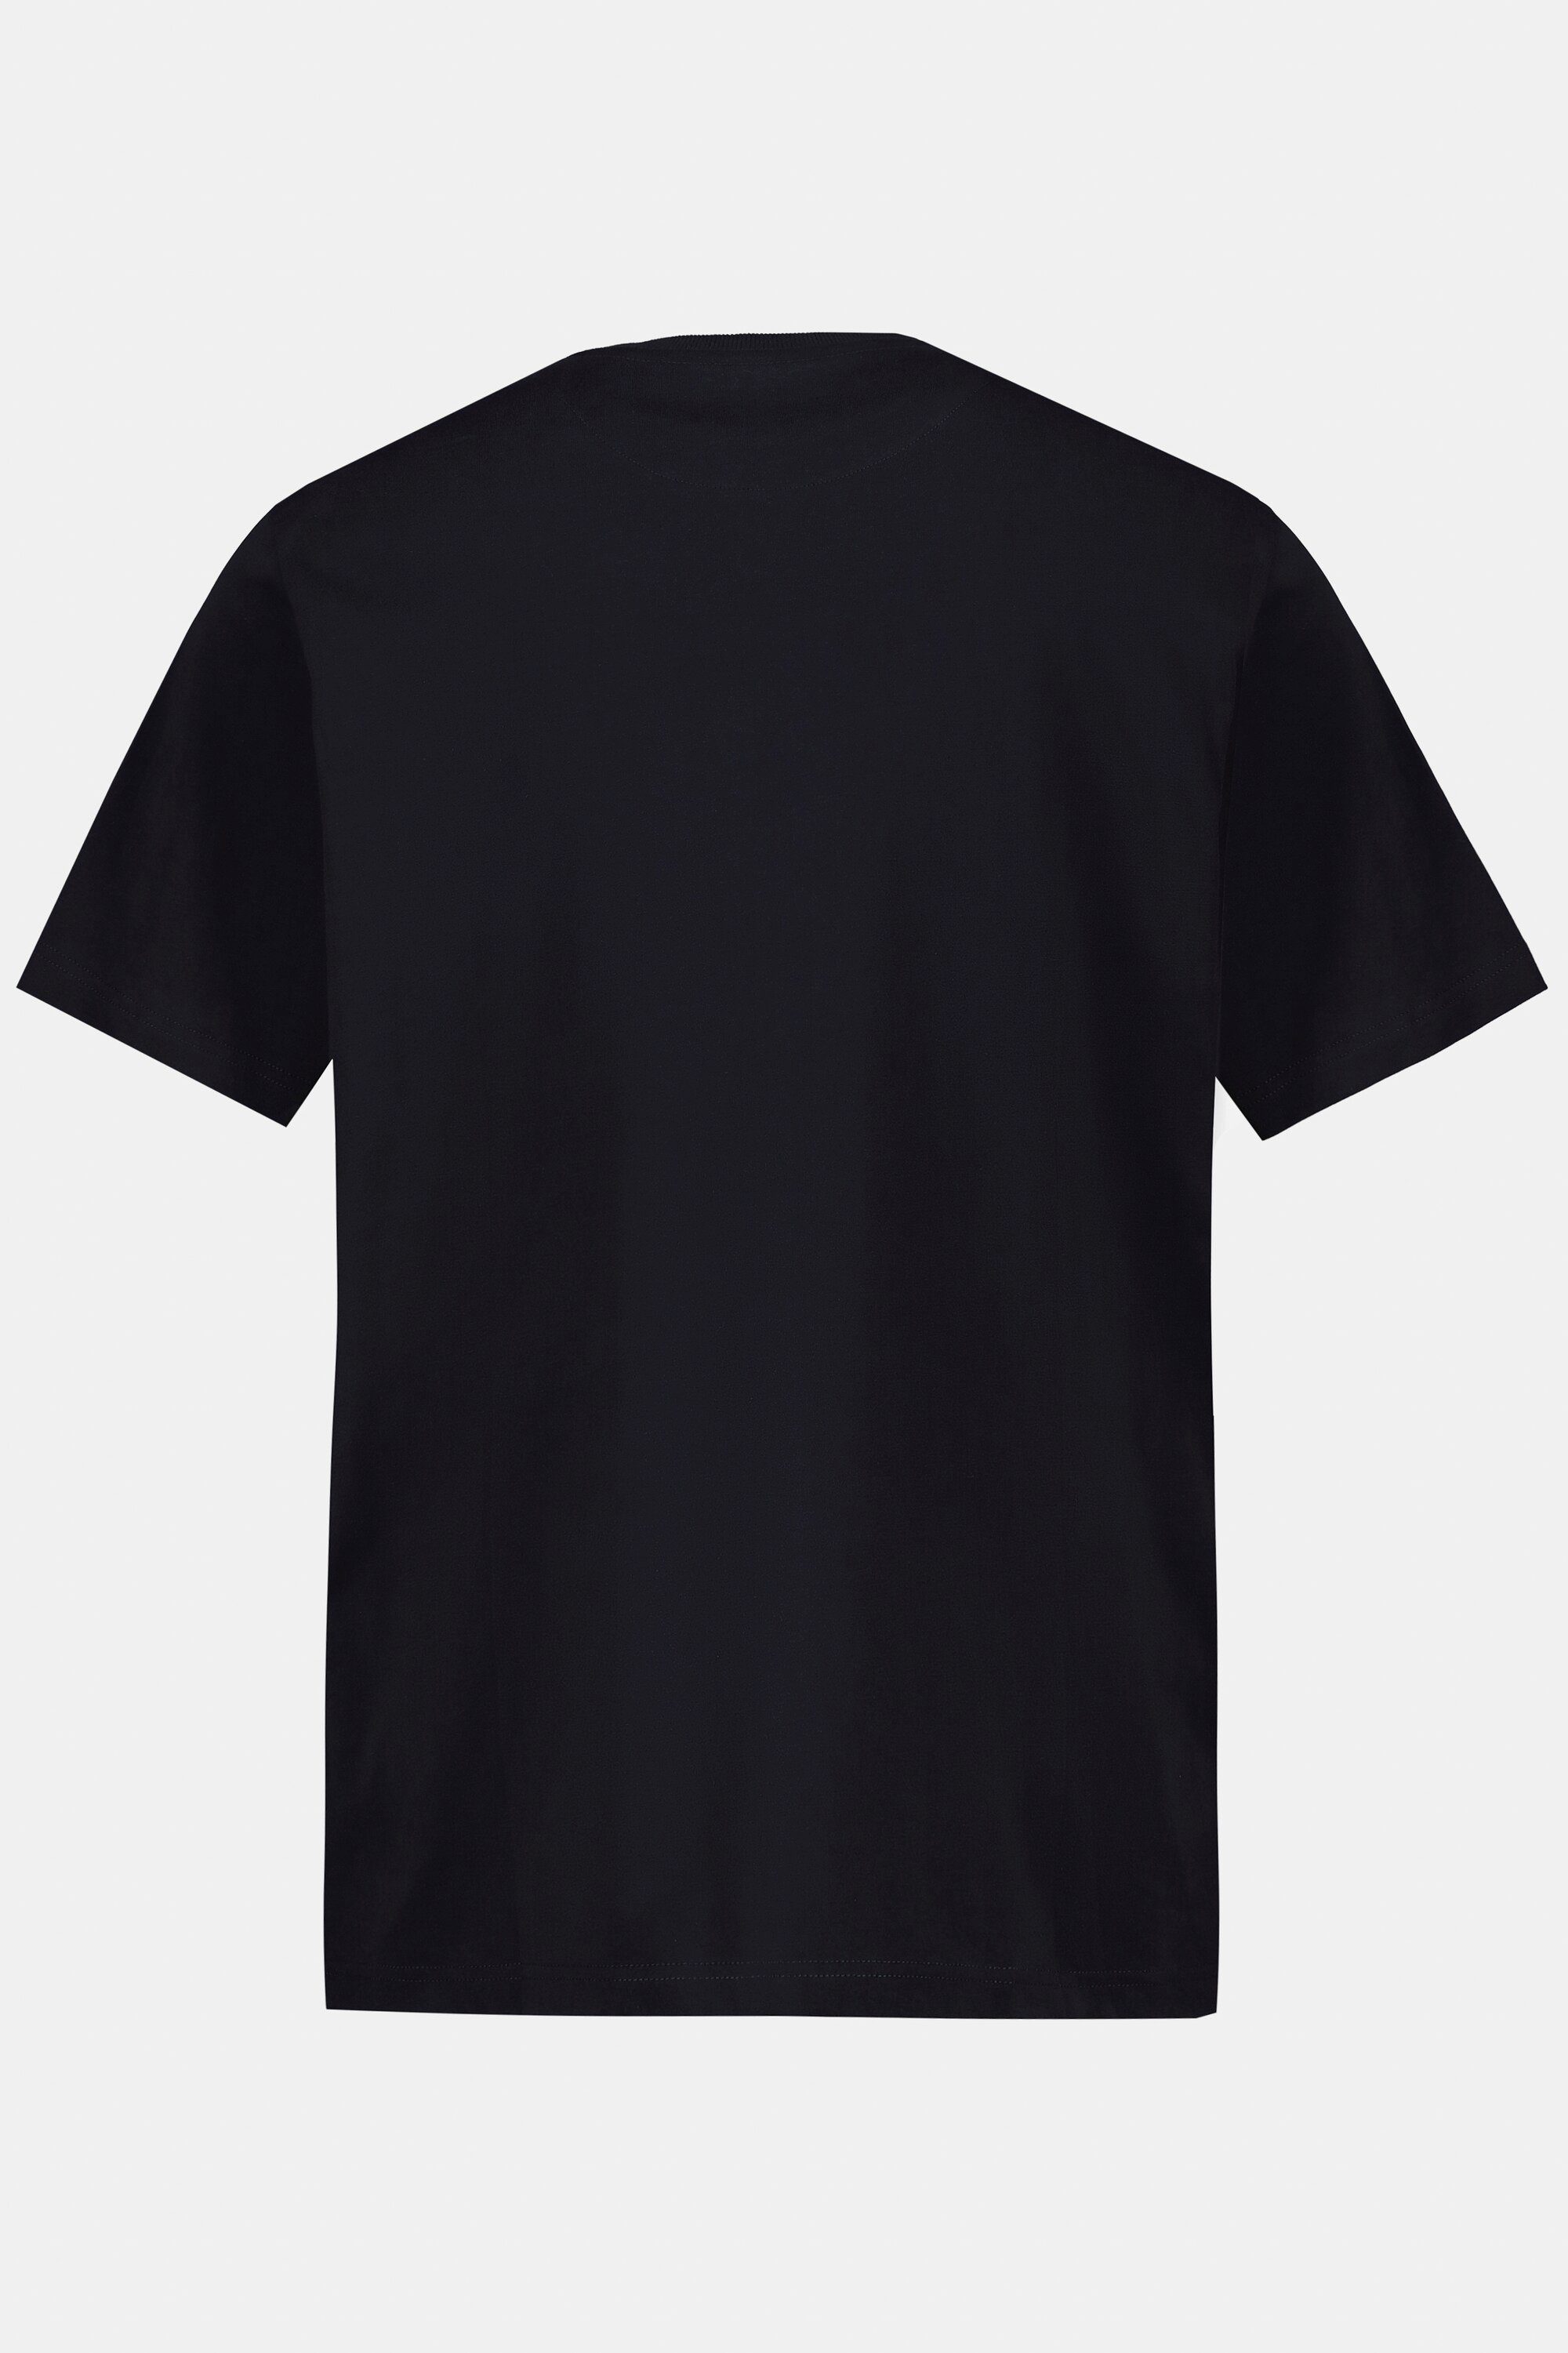 Fotoprint Rundhals Schlafanzug T-Shirt JP1880 Halbarm